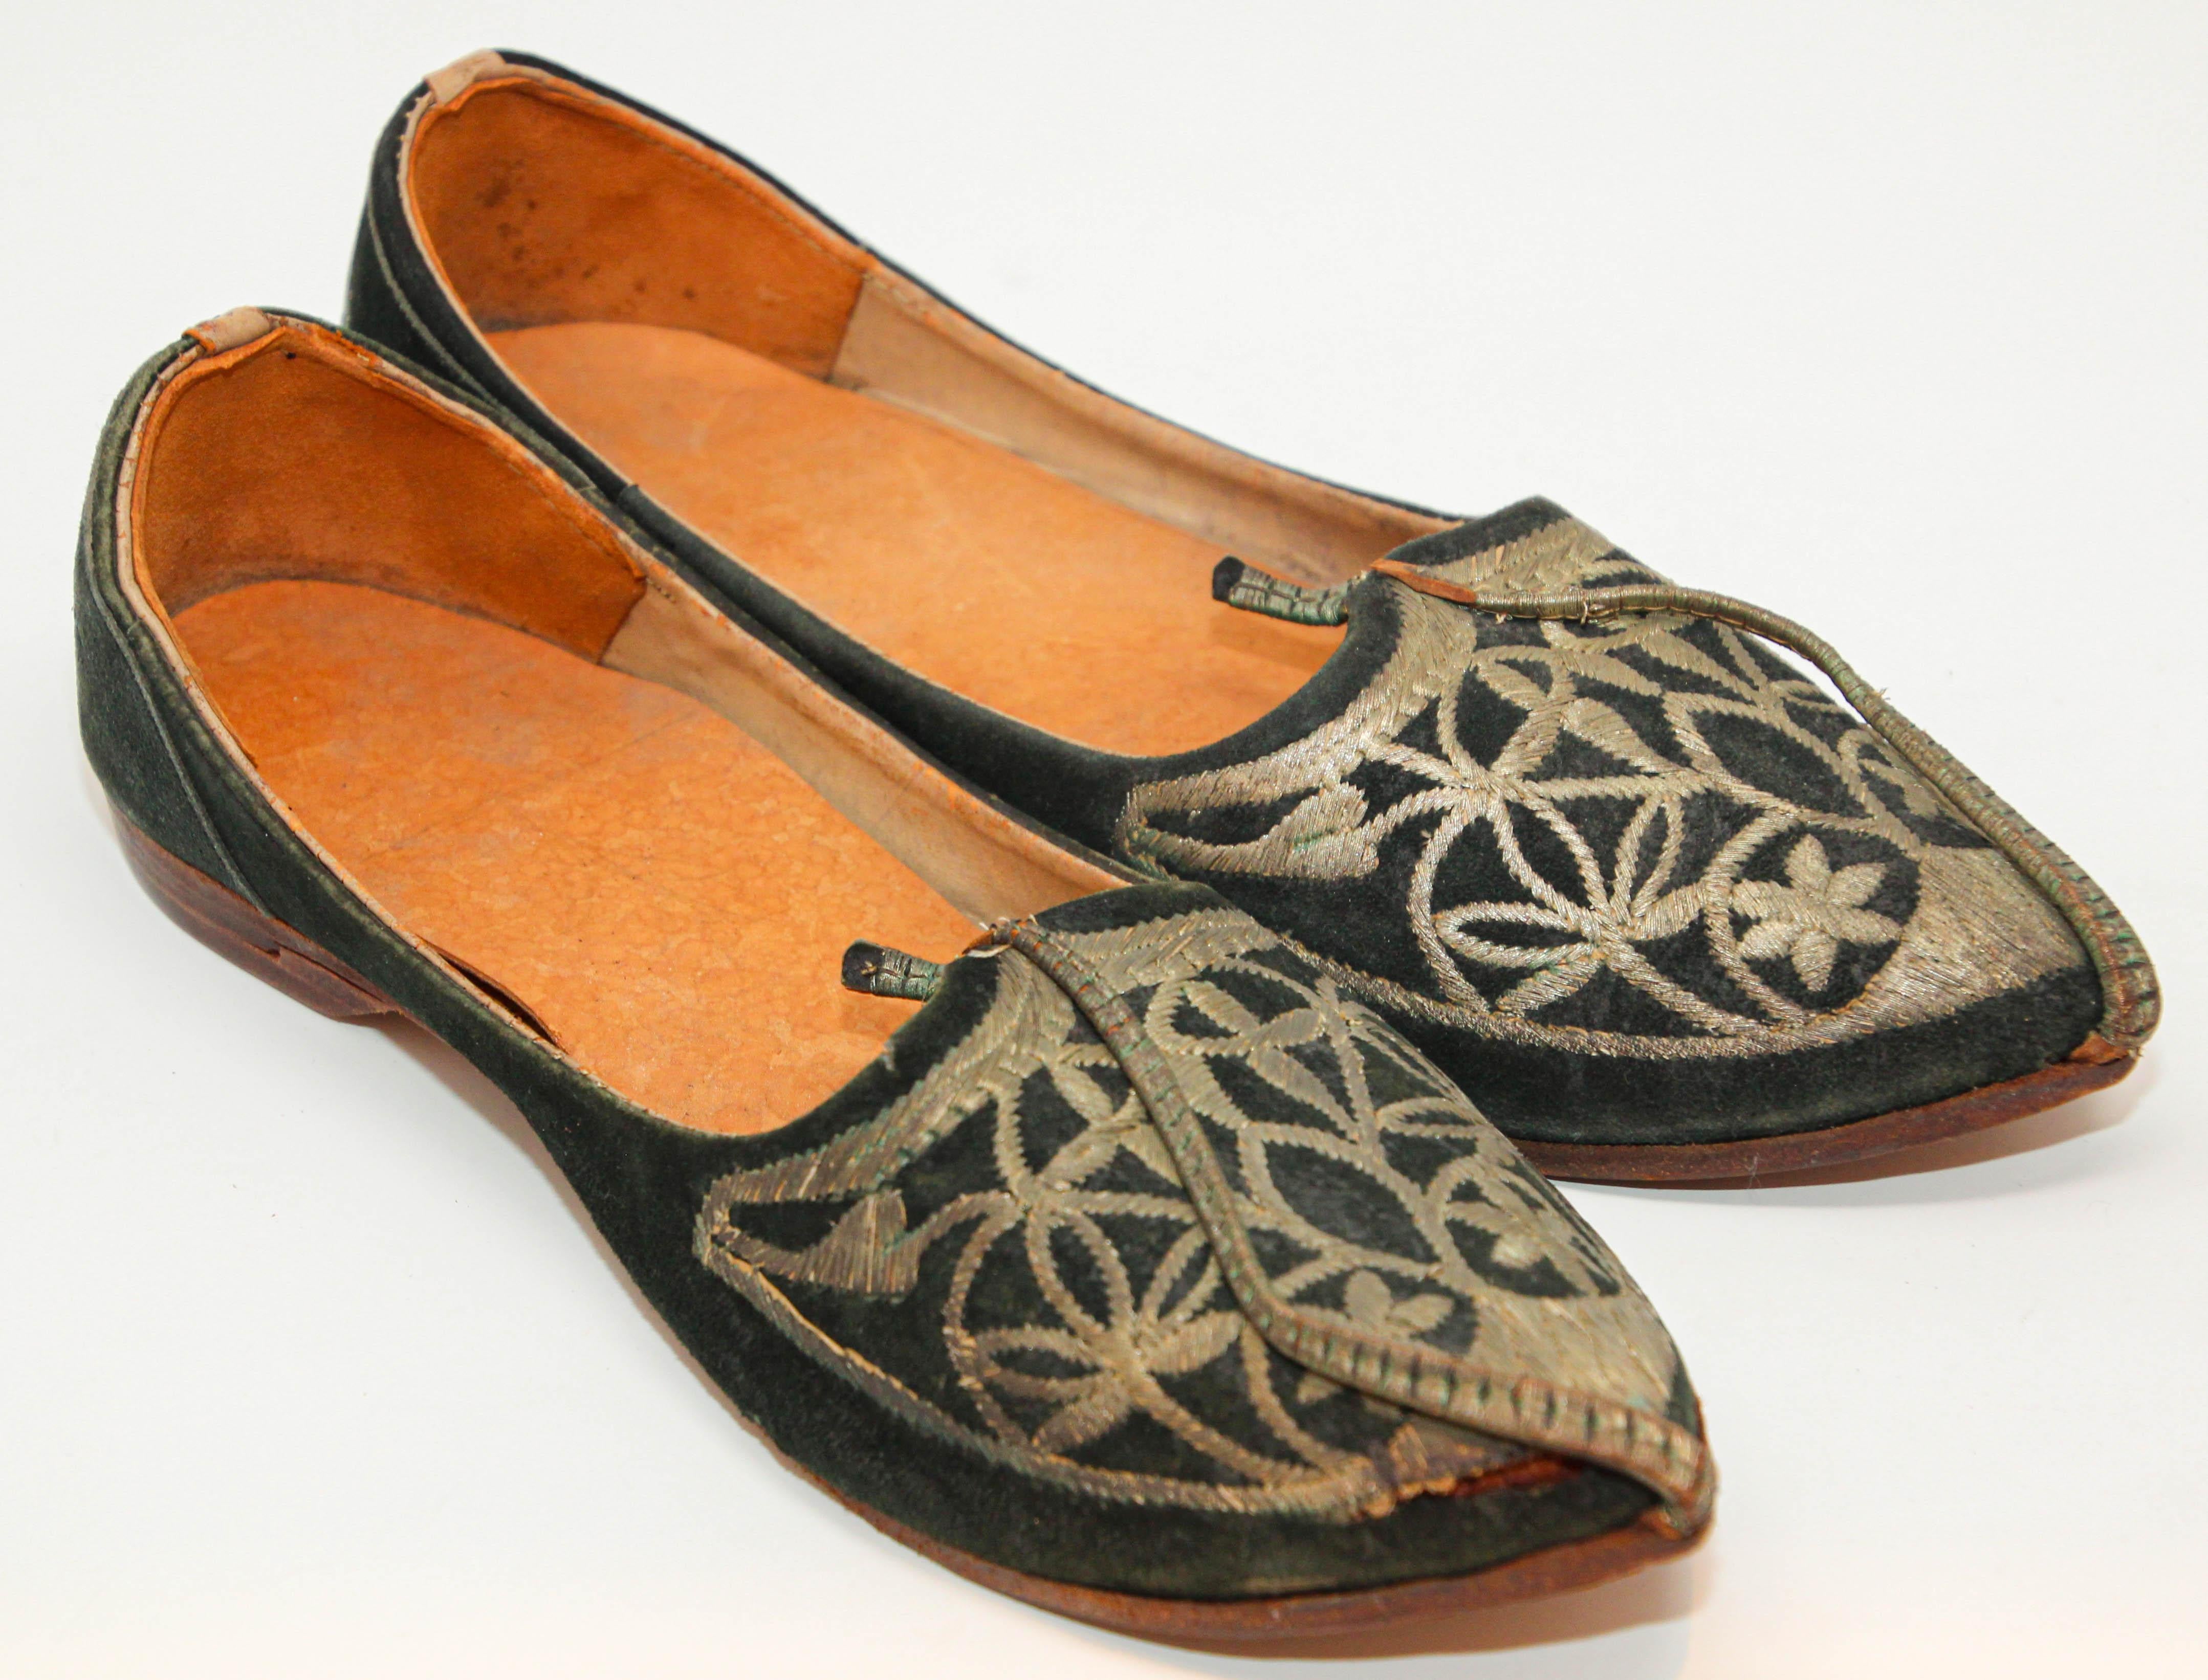 Vintage Collectional Moorish Mughal style Curled Toe Black Leather Shoes from Tony Duquette Estate.
Fabriqués à la main avec un corps en cuir, les fronts sont décorés de lingots métalliques cousus à la main. Projection avant en cuir retourné fuselé